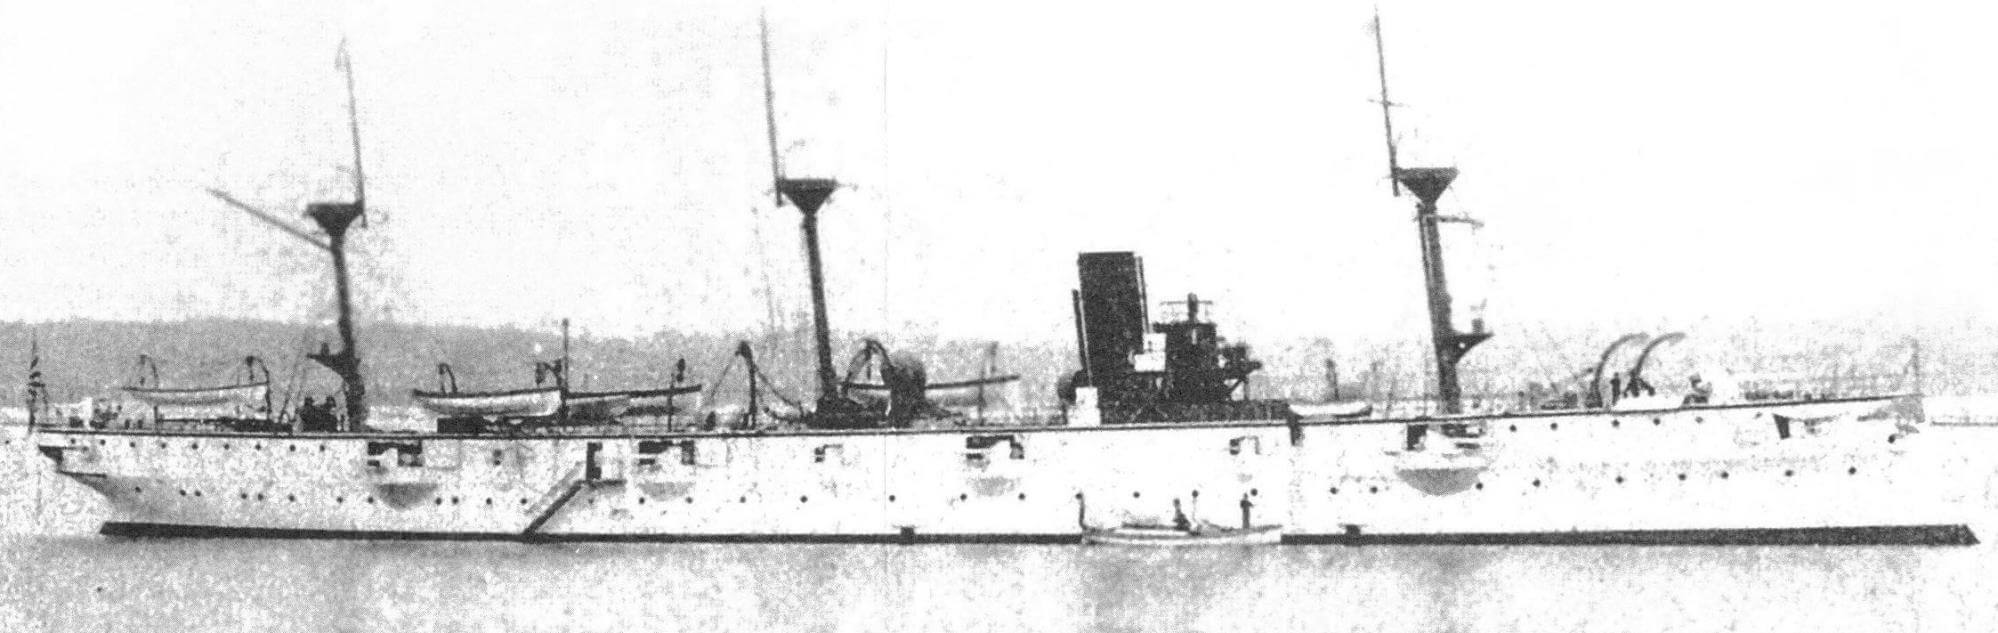 Броненосный крейсер «Тиёда». Несмотря на то, что во время постройки класс корабля изменился, его внешний вид лишь незначительно отличался от первоначального бронепалубного варианта